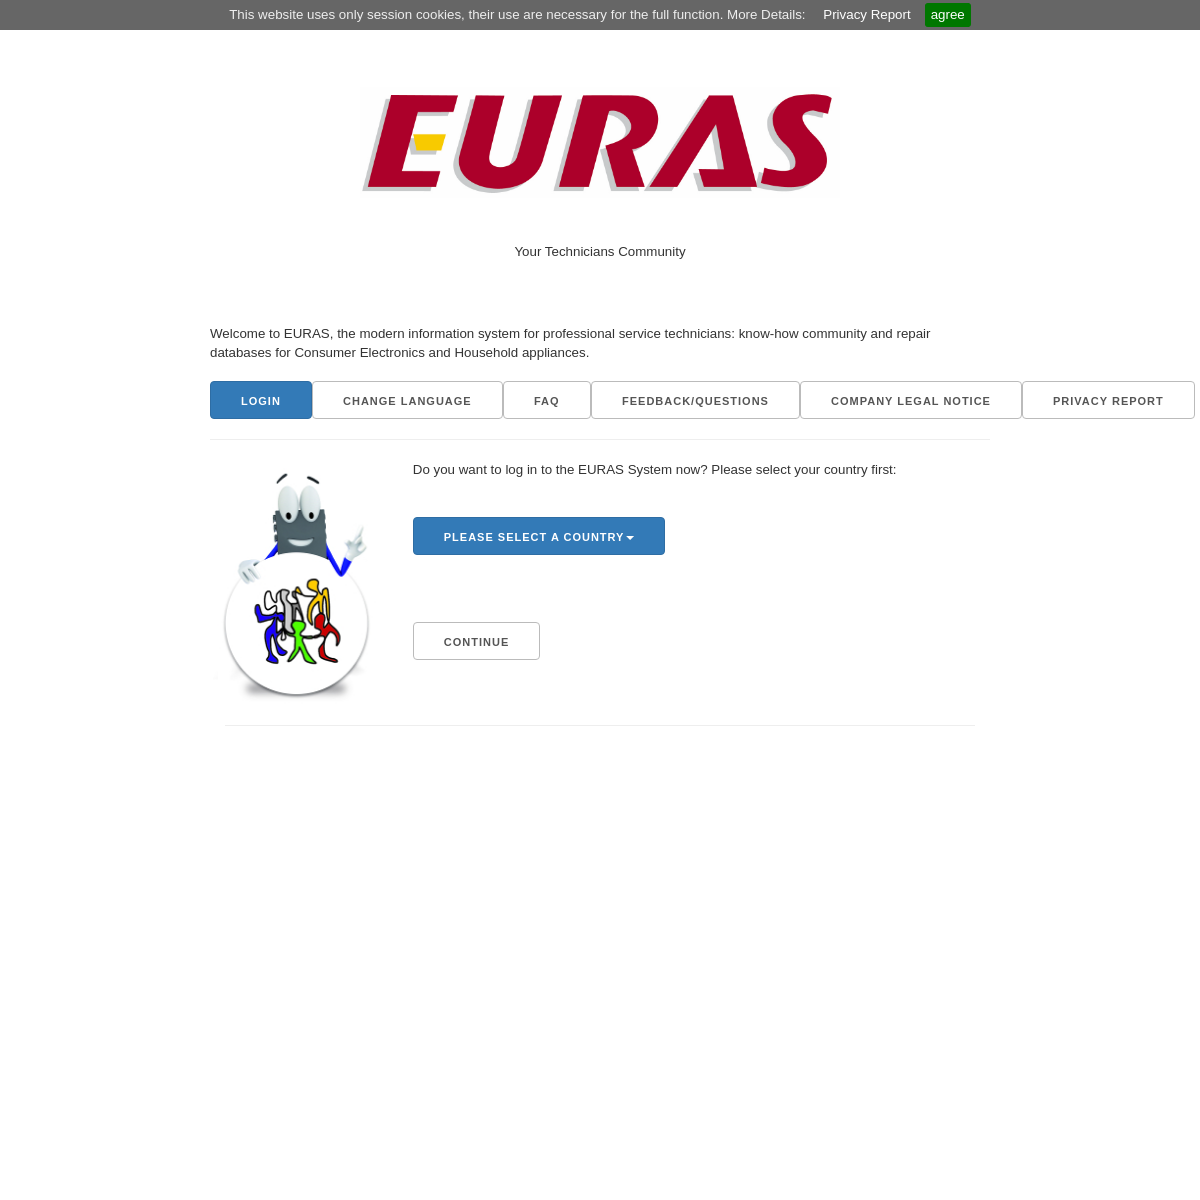 A complete backup of euras.com